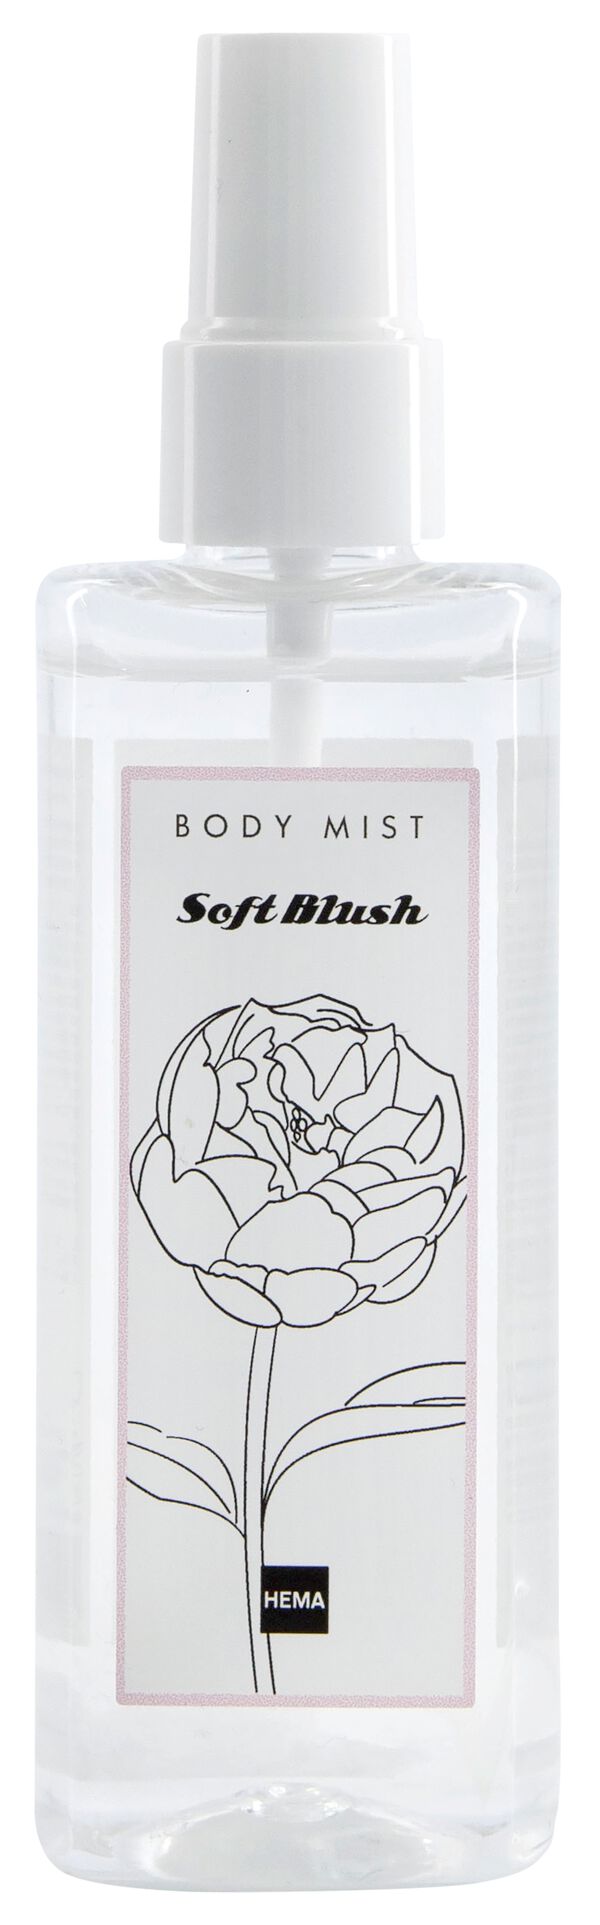 body mist soft blush natural 100ml - HEMA